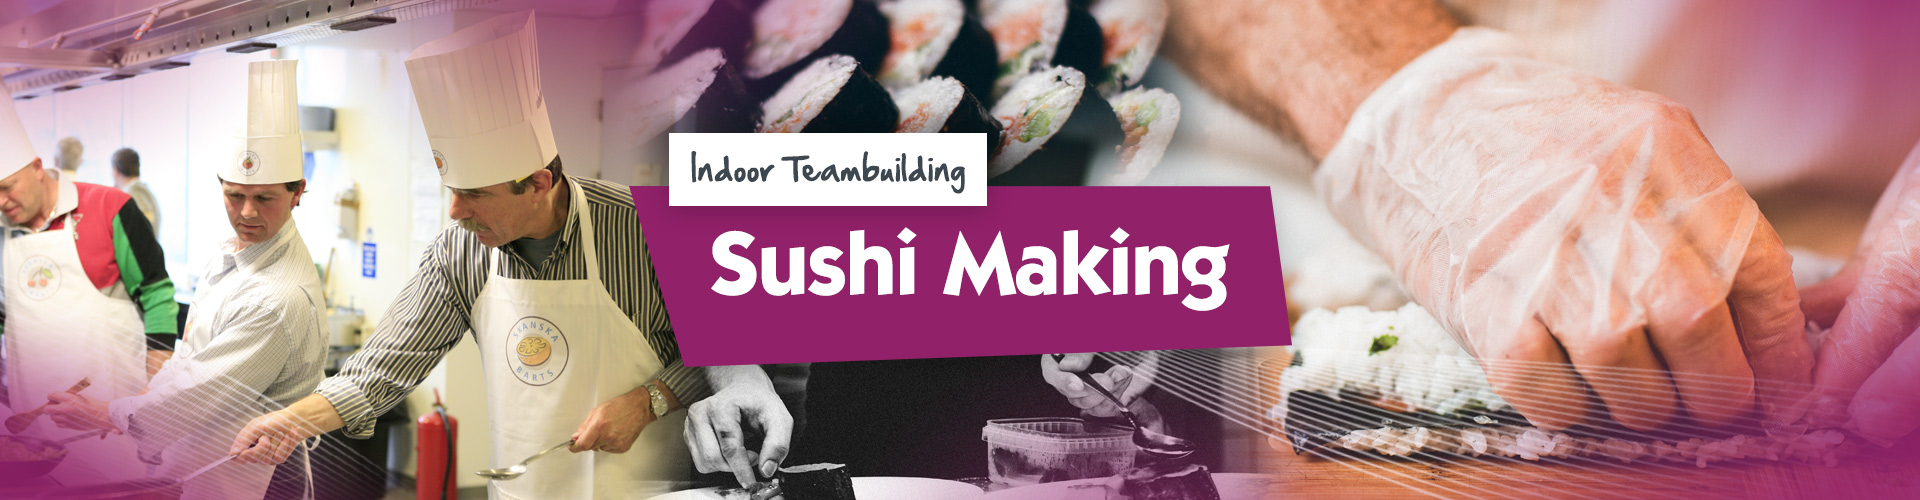 Teambuilding | Sushi Making